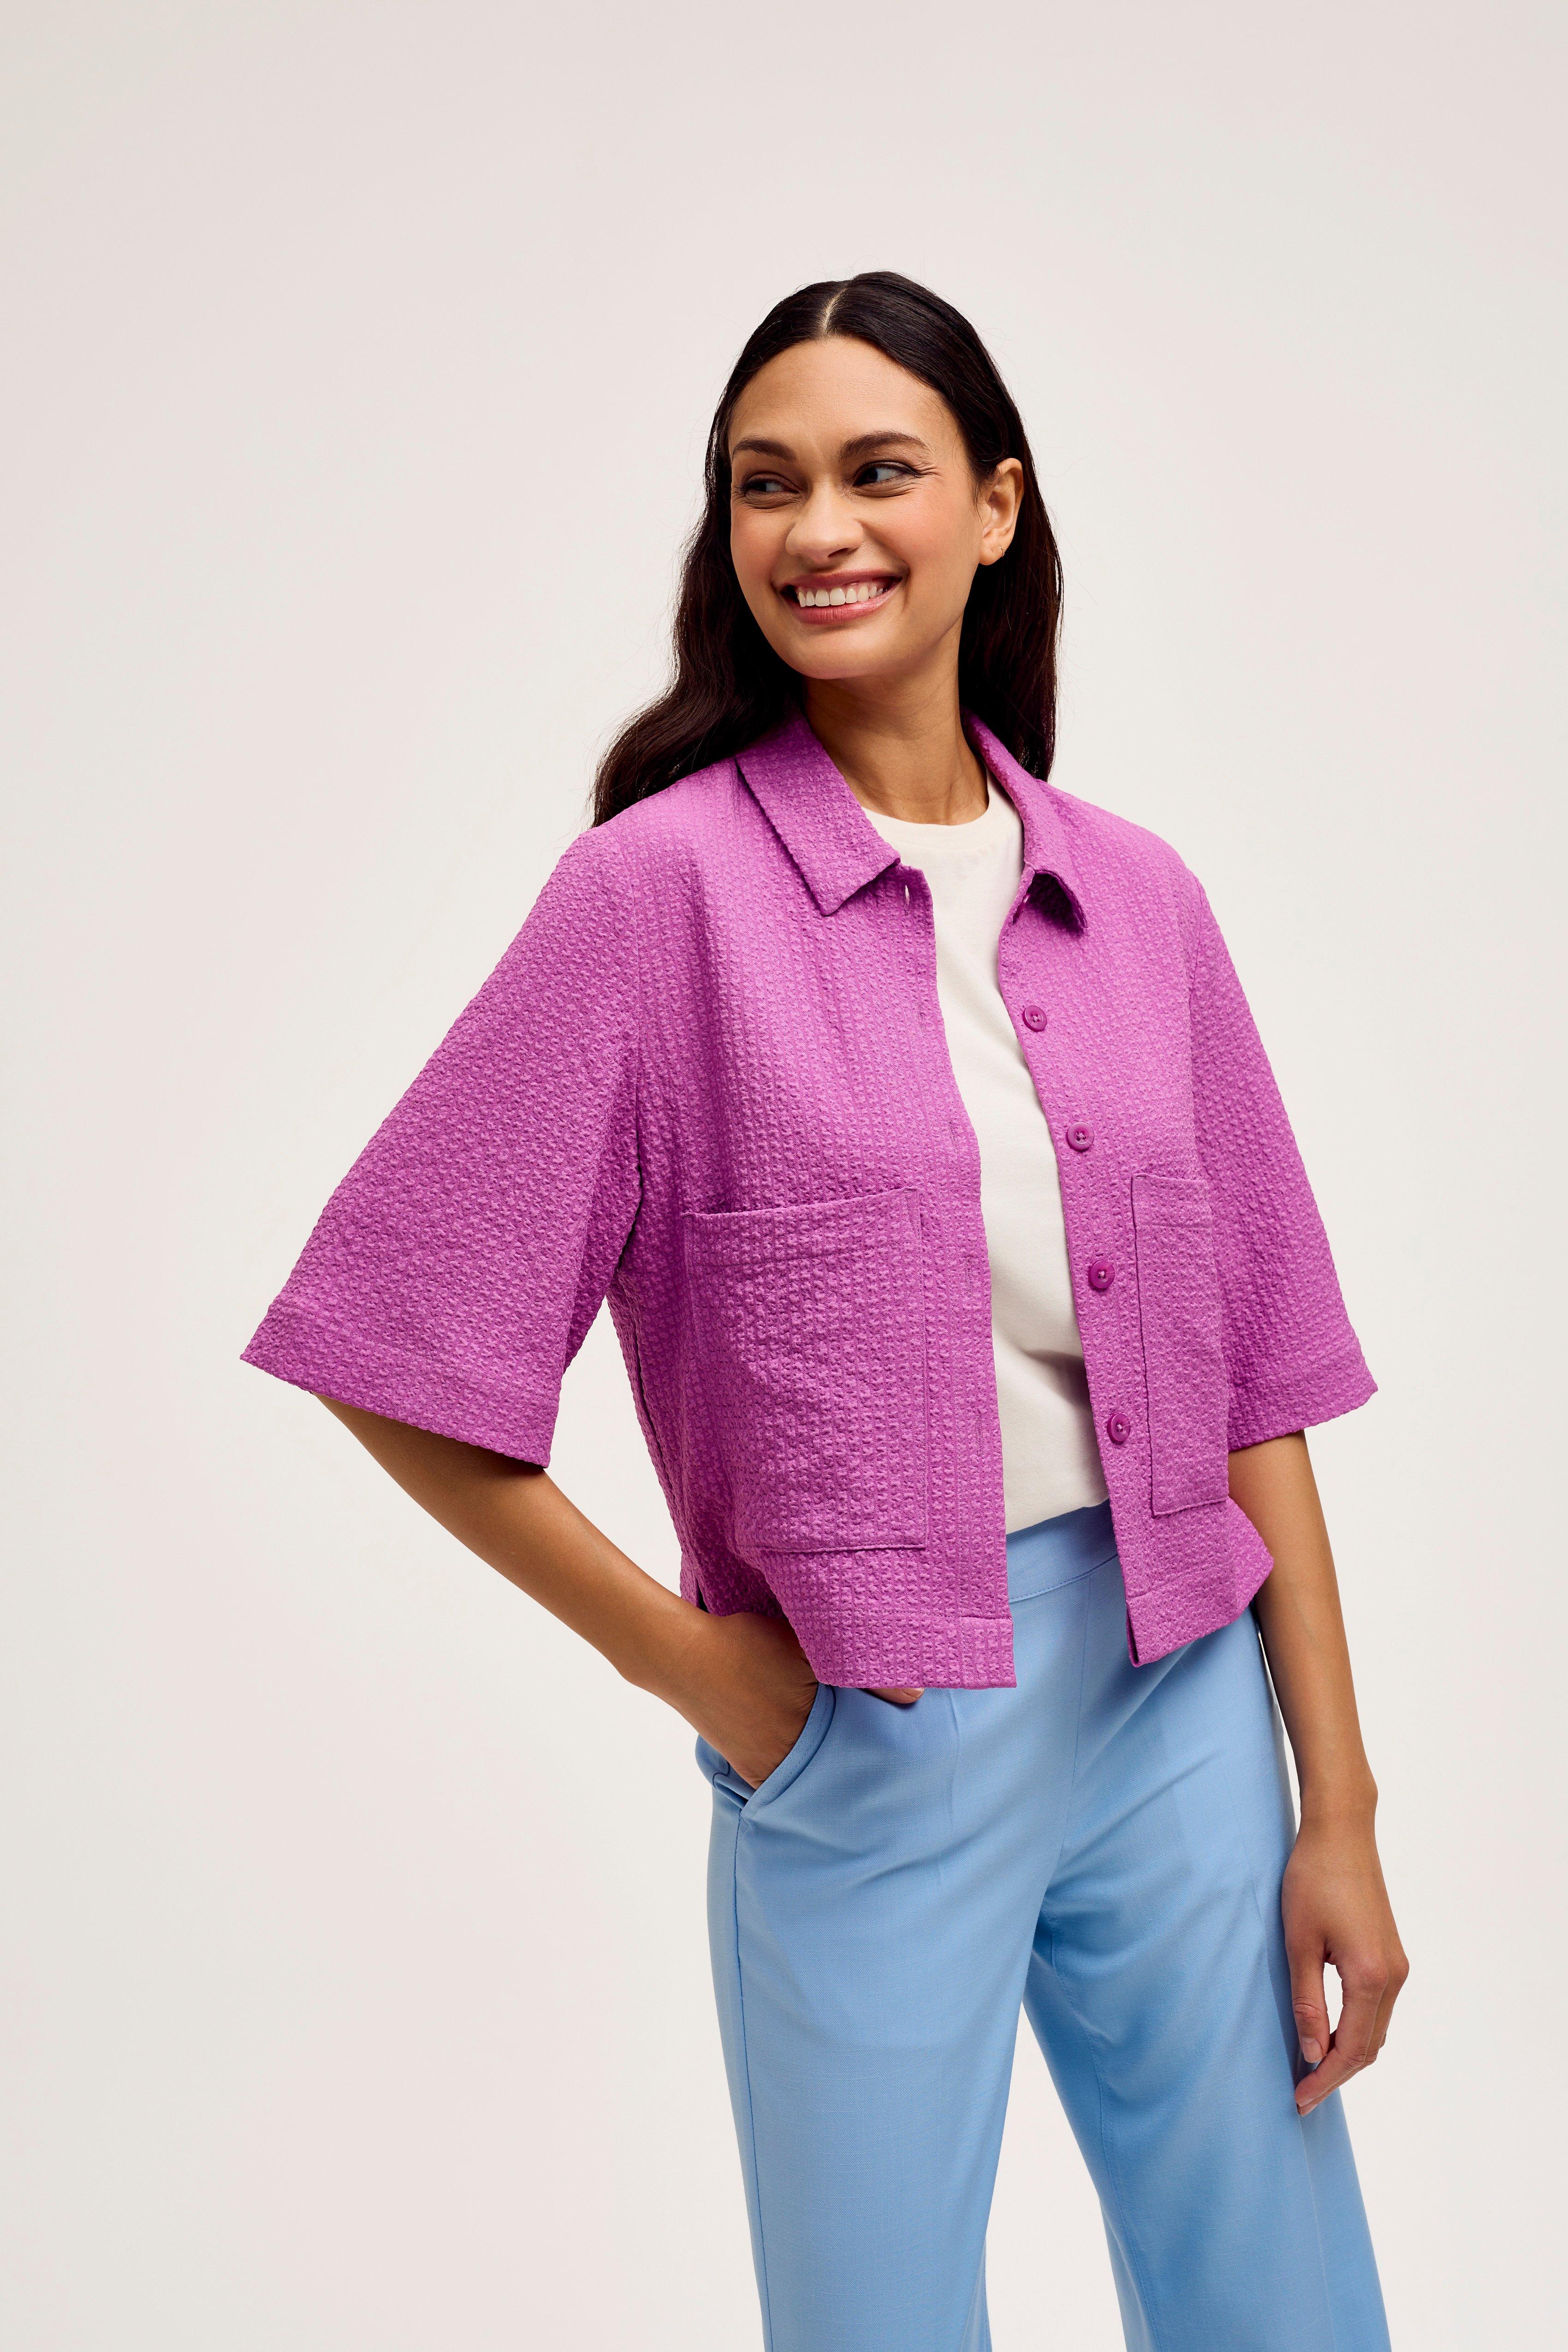 CKS Dames - SELIN - blouse long sleeves - lila